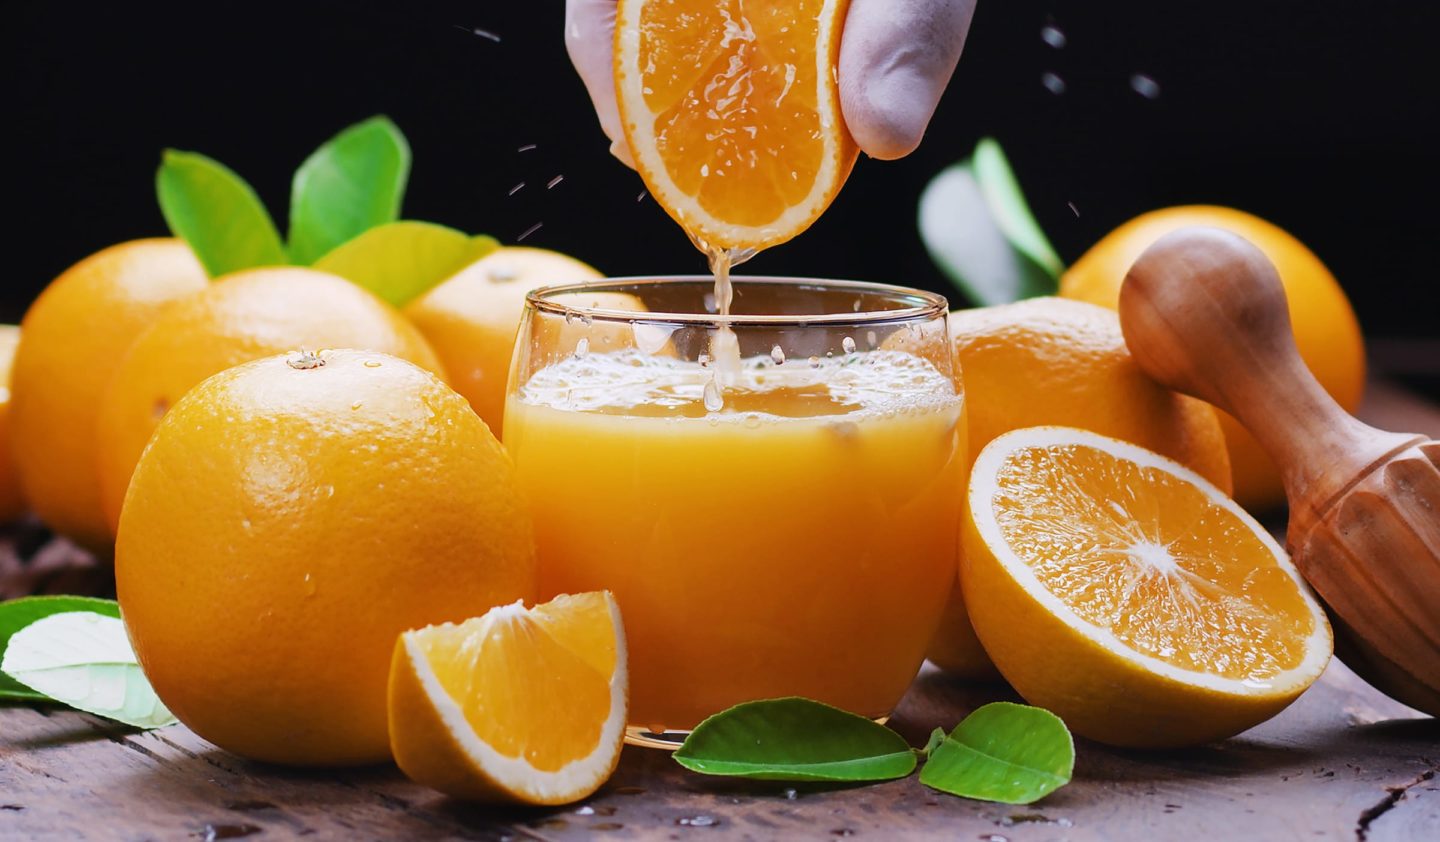 Pure Orange Juice